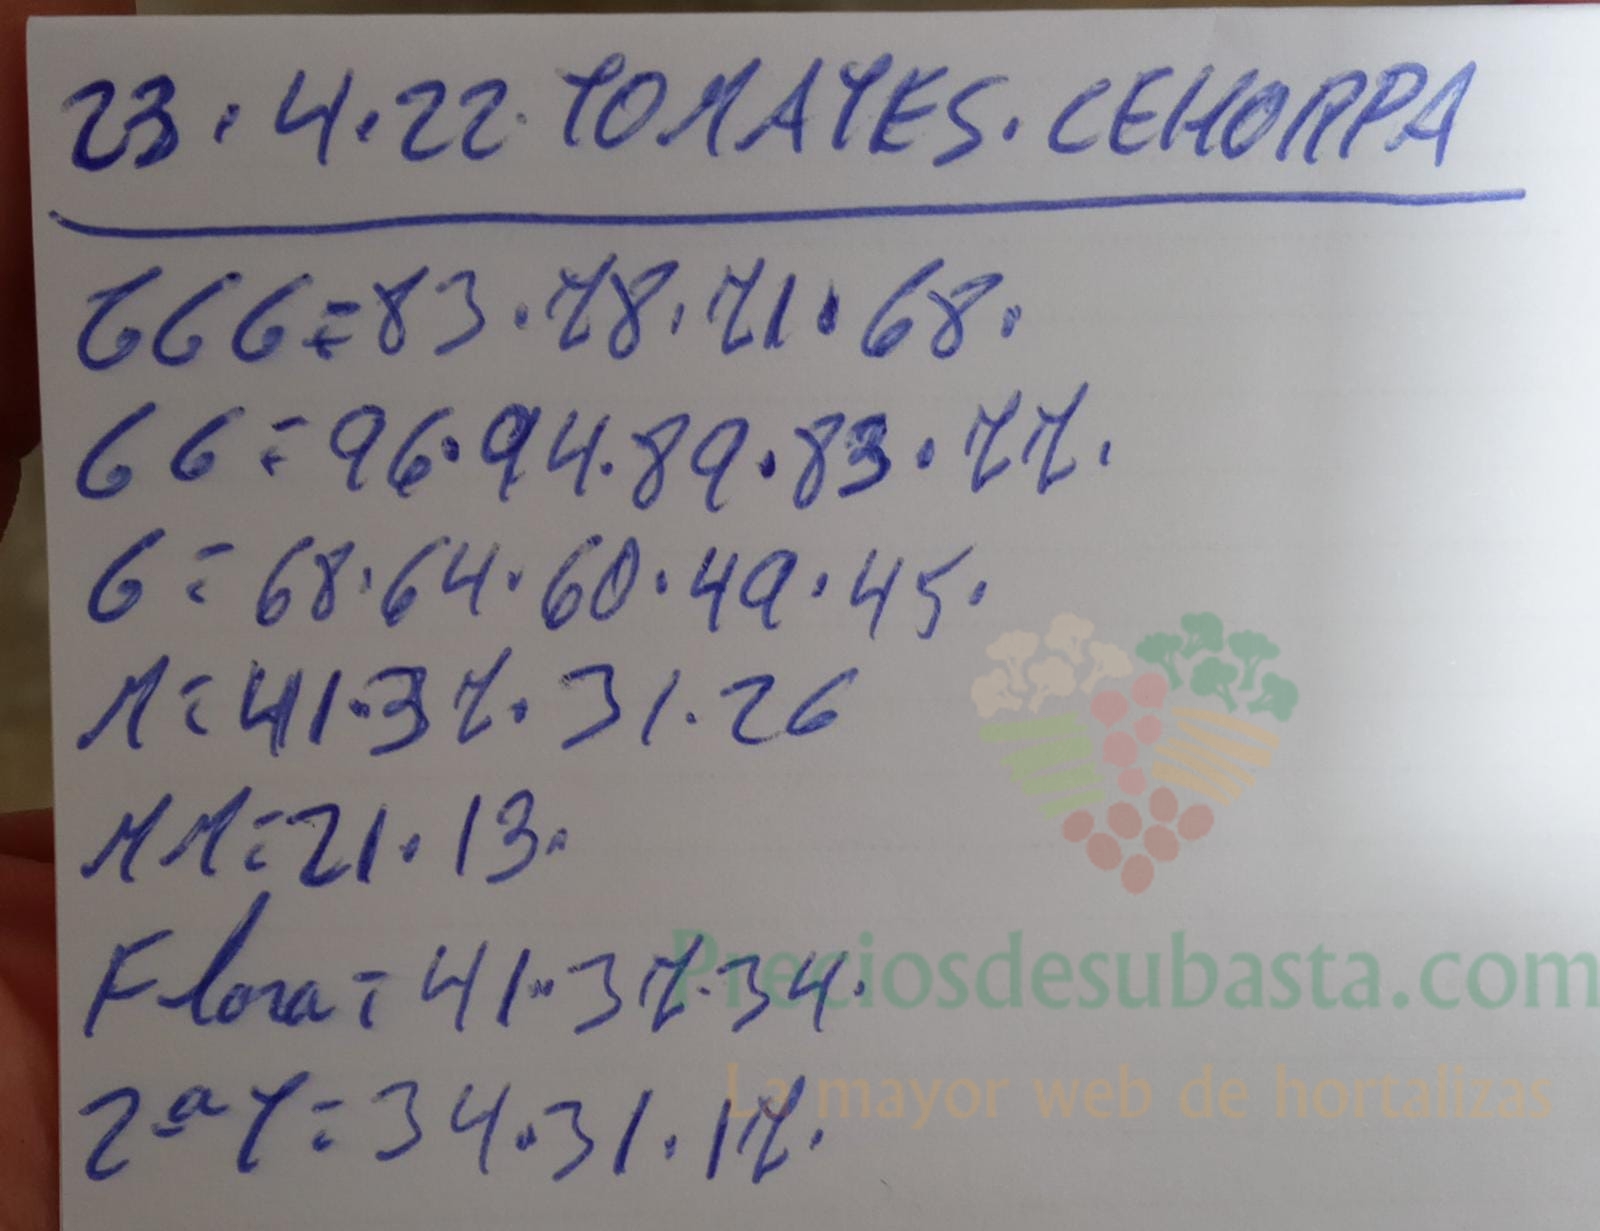 Subasta hortofrutícola Costa de Almería Cehorpa tomate 23 de abril 2022